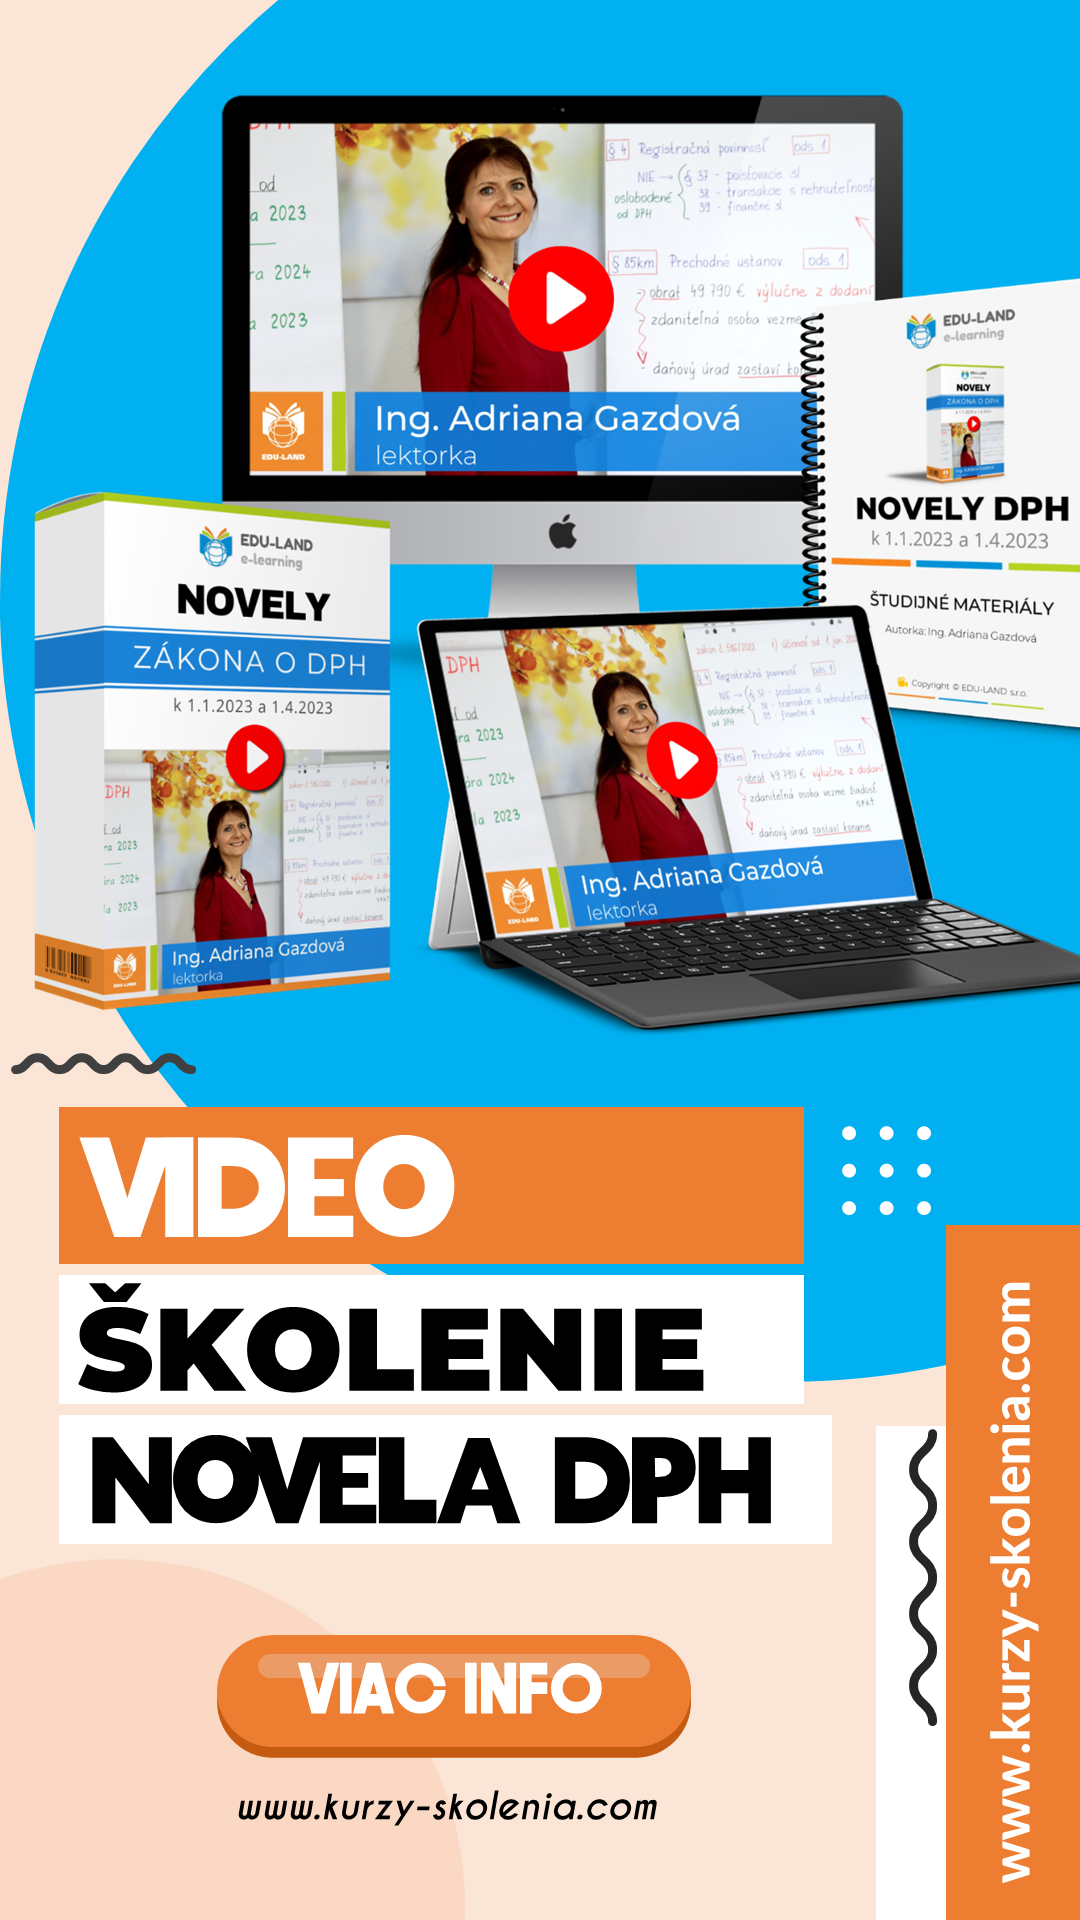 Video školenie Novela DPH 2023